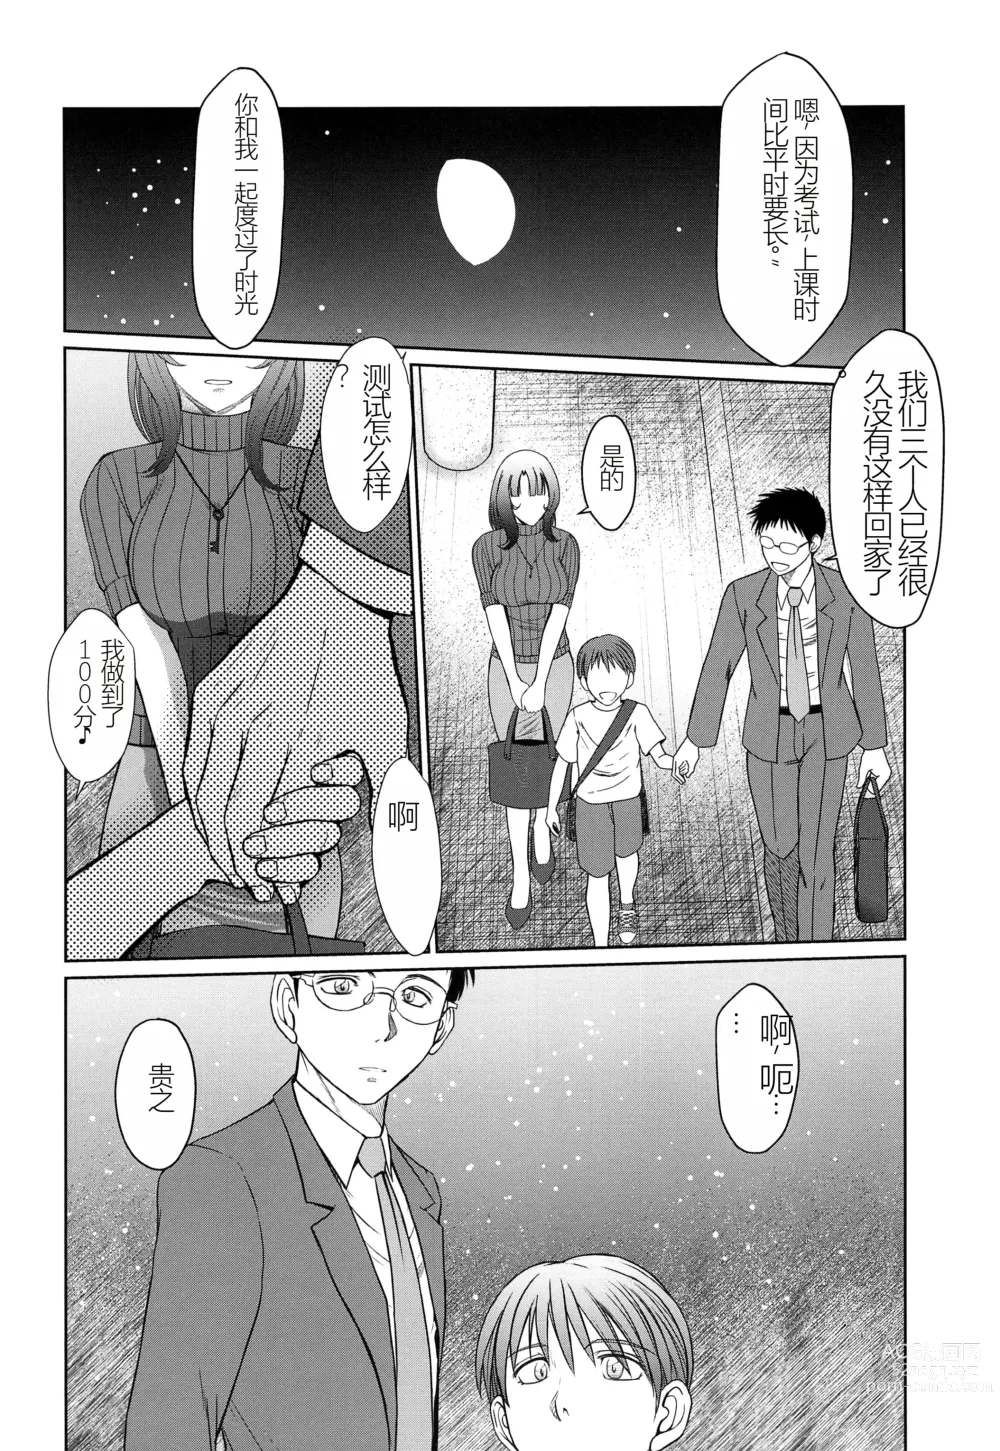 Page 29 of doujinshi Kagesawa Mura no Akai Kagi